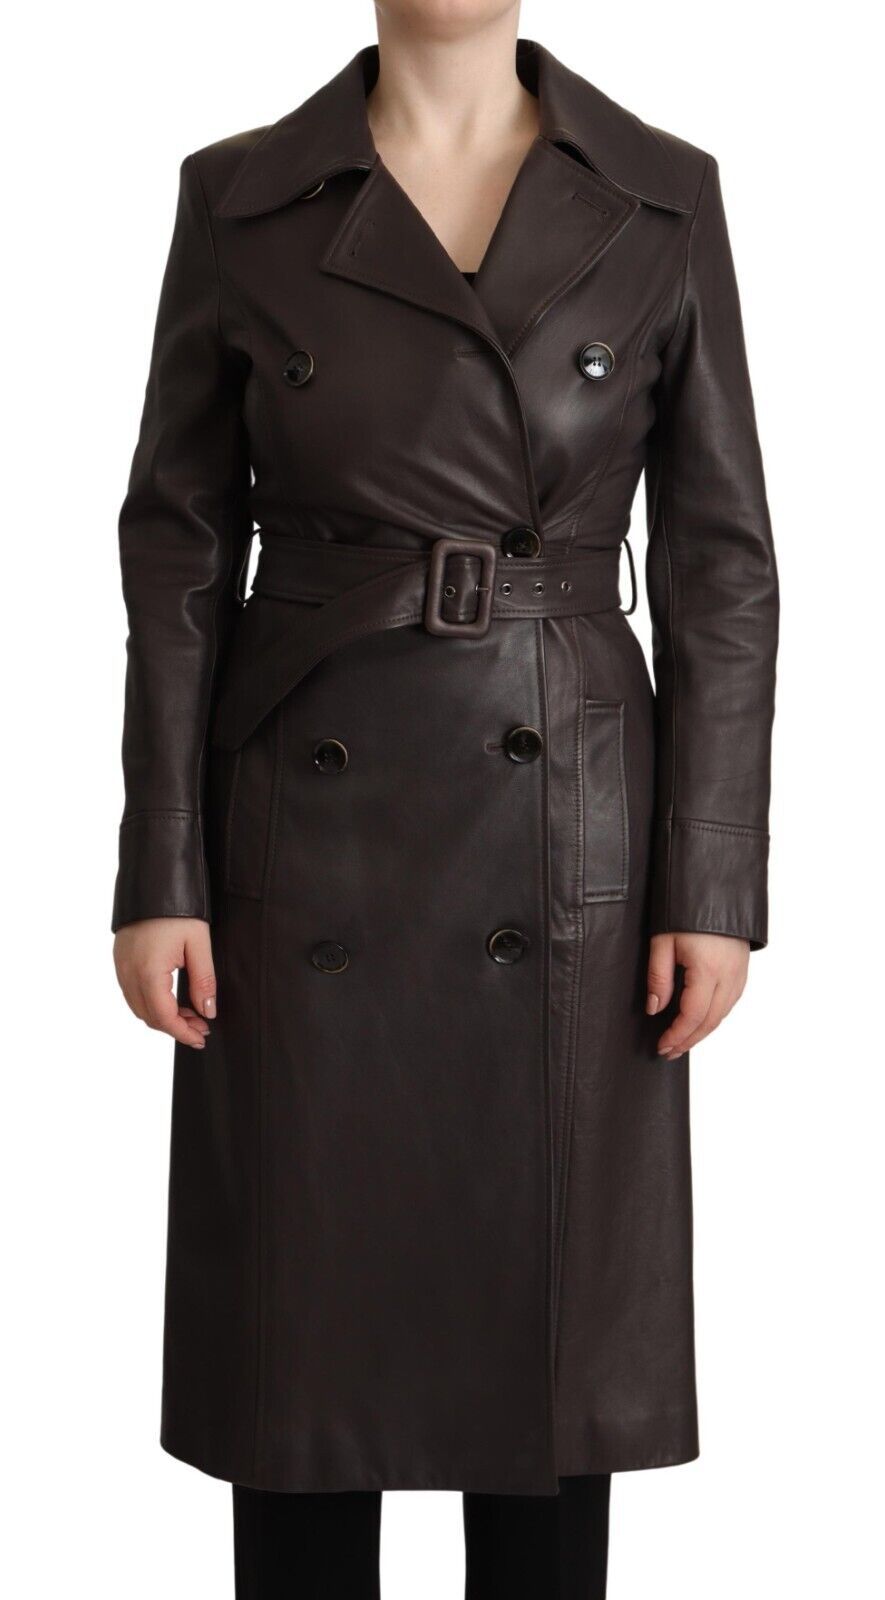 Dark Brown Leather Long Sleeves Belted Jacket